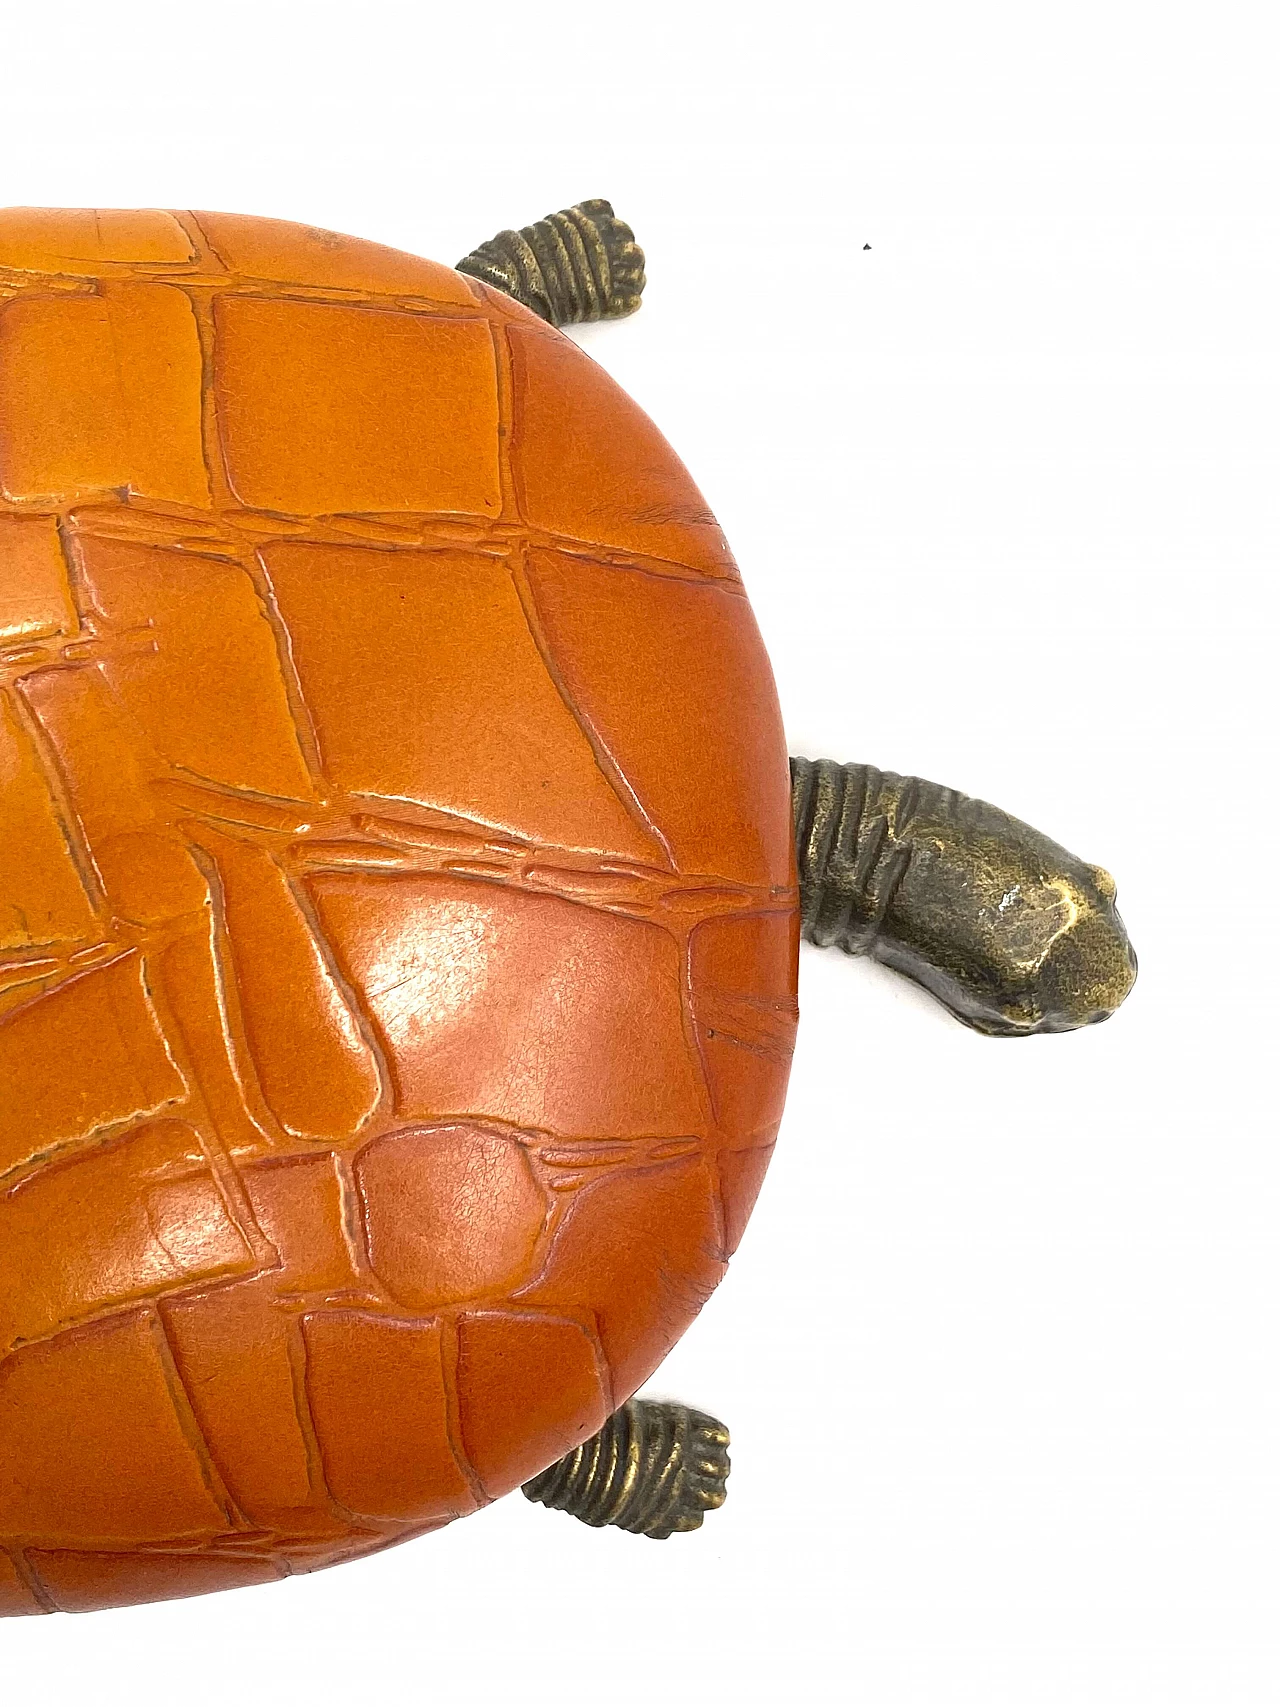 Portagioie a forma di tartaruga in pelle e bronzo, anni '50 39